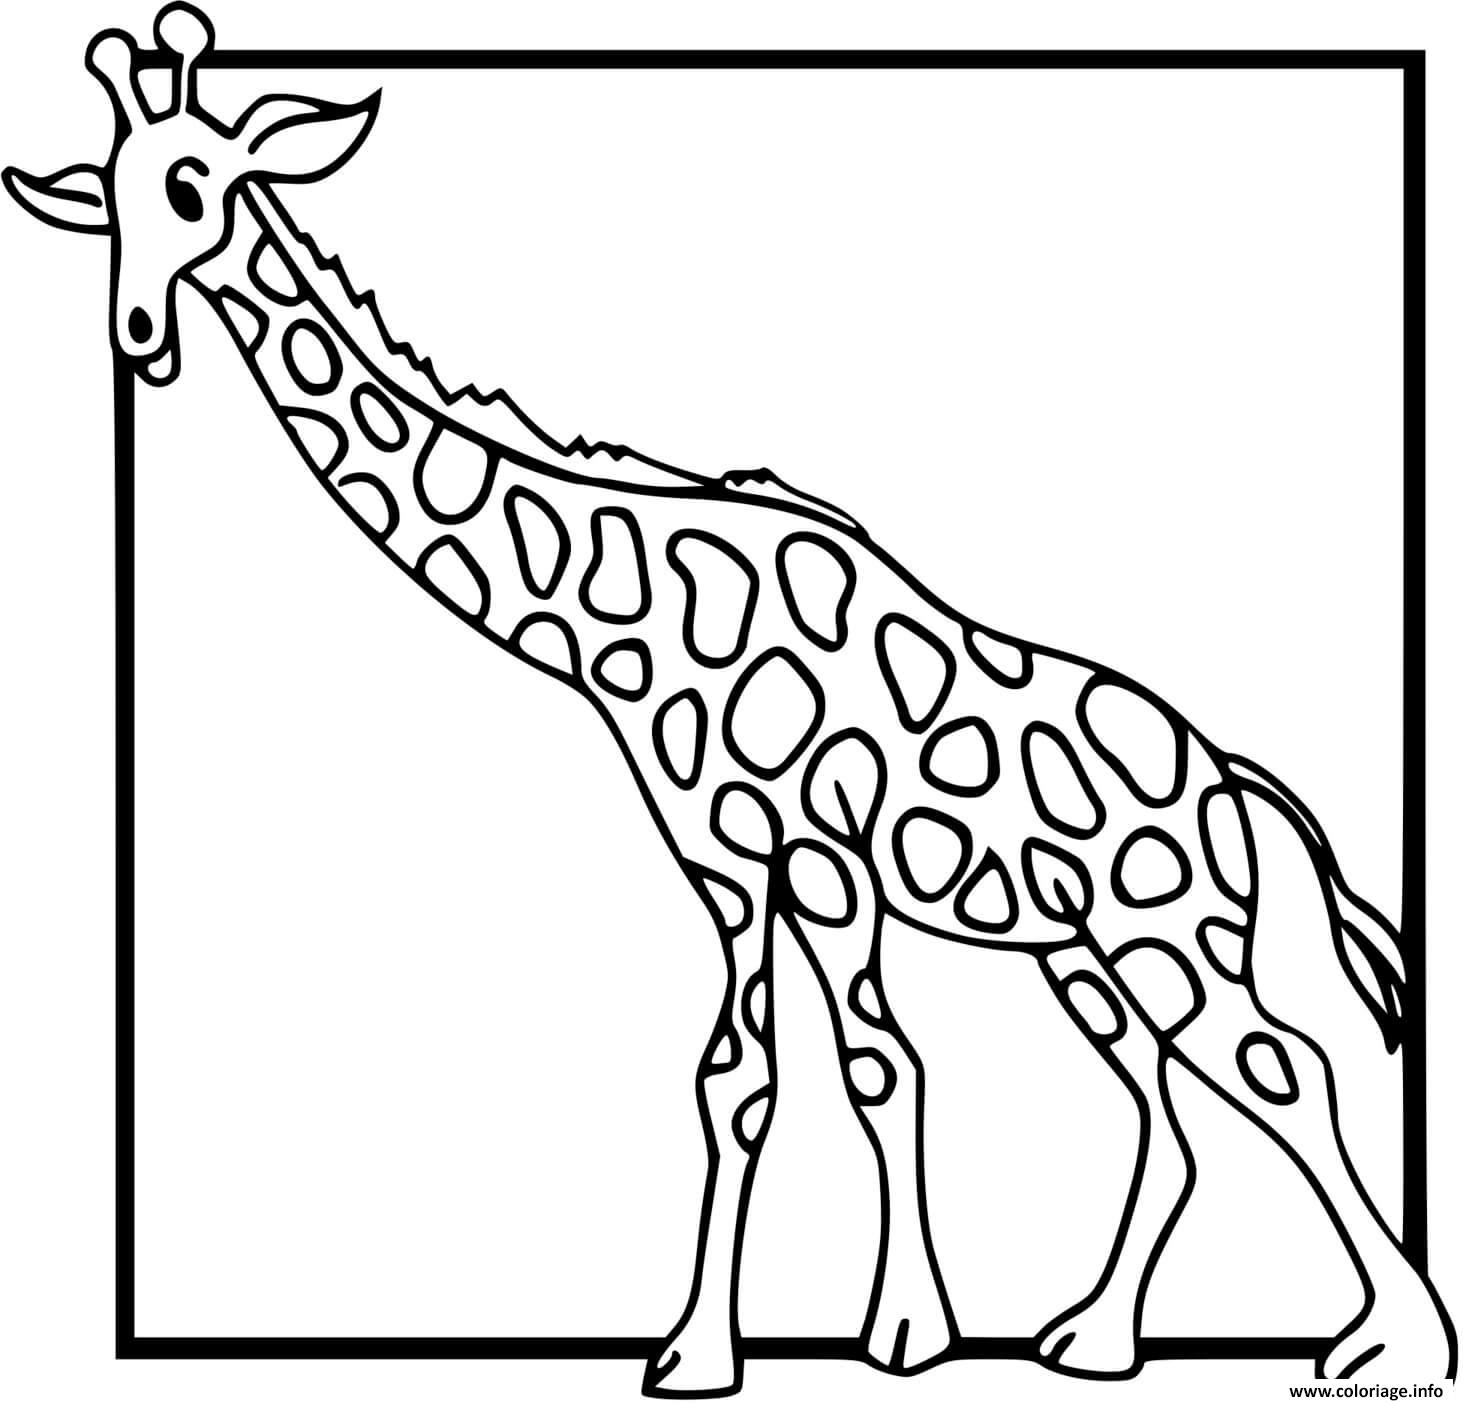 Dessin girafe dans un cadre Coloriage Gratuit à Imprimer